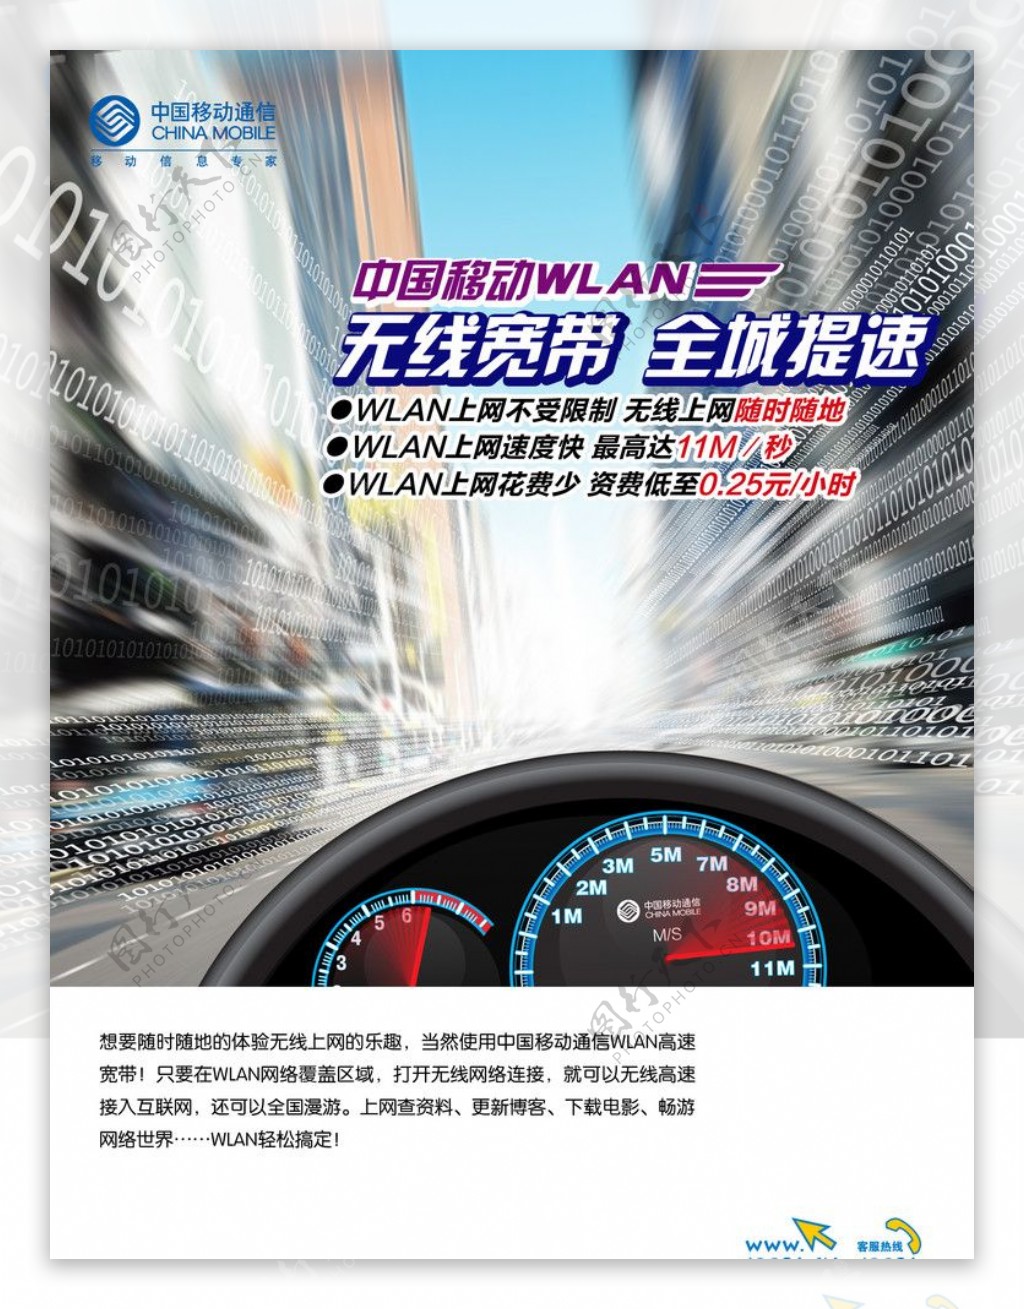 无线宽带WLAN提速中国移动图片